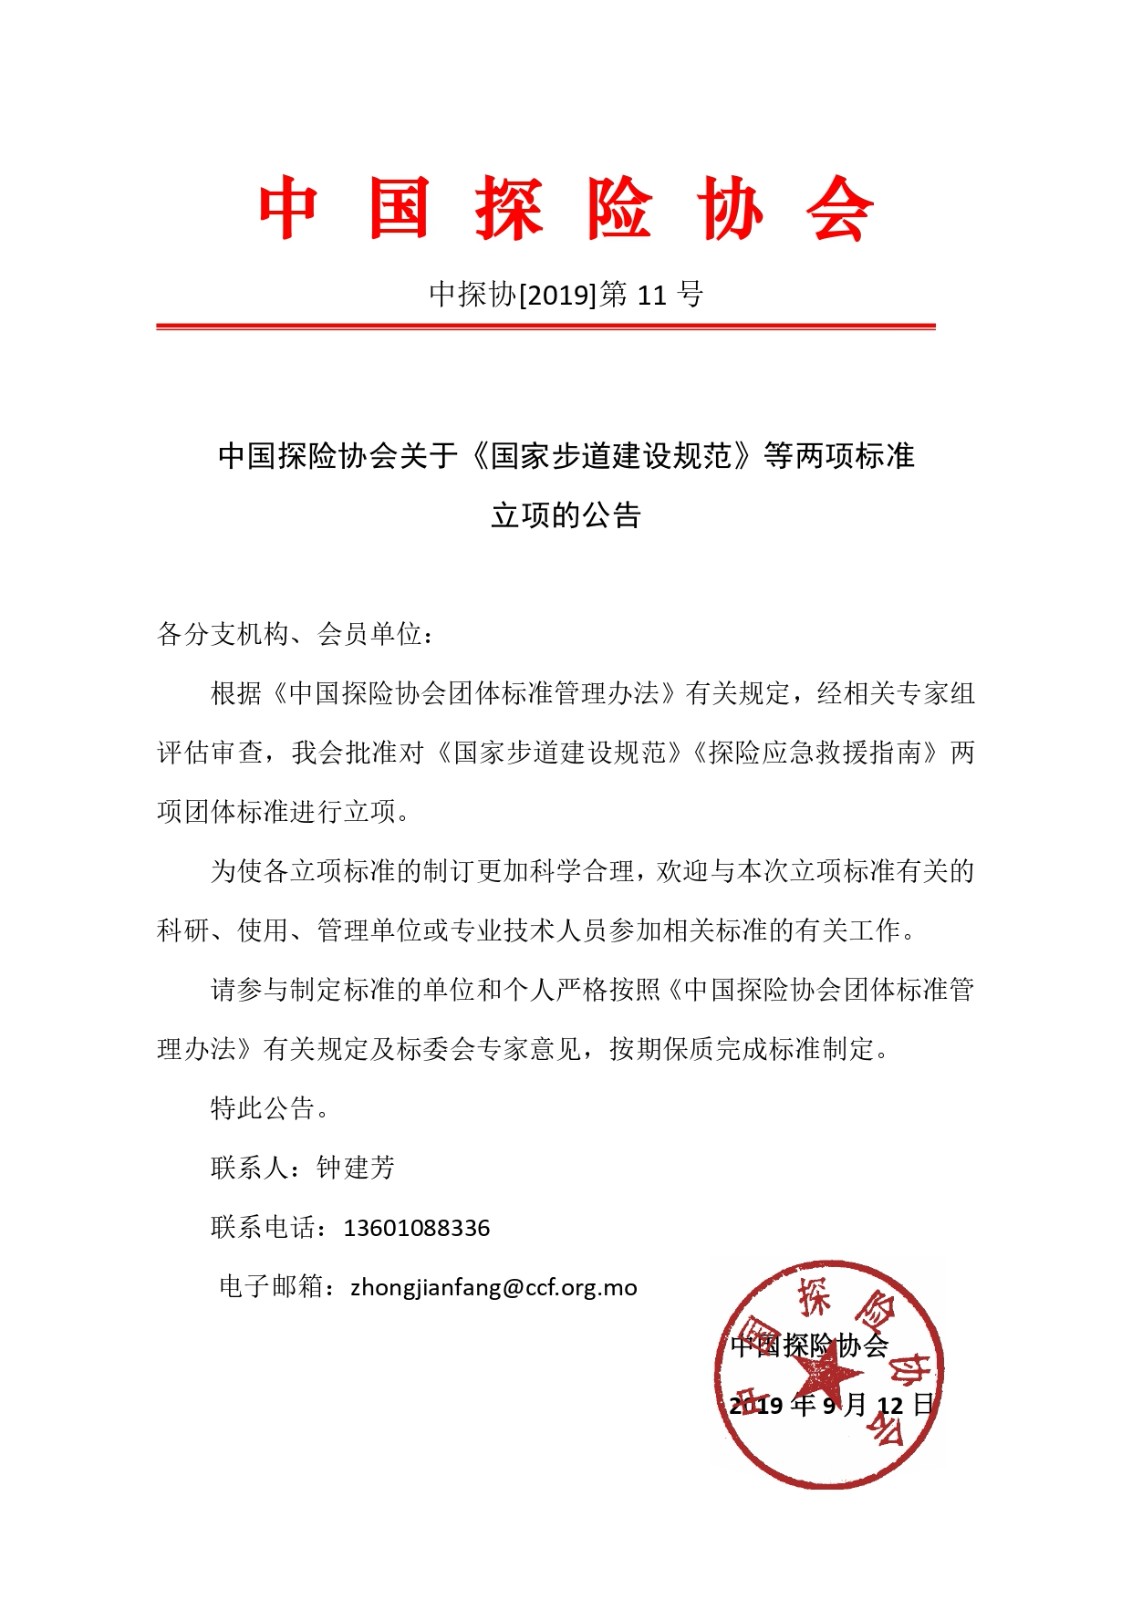 中国探险协会关于《国家步道建设规范》等两项团体标准立项的公告(1)_page-0001.jpg